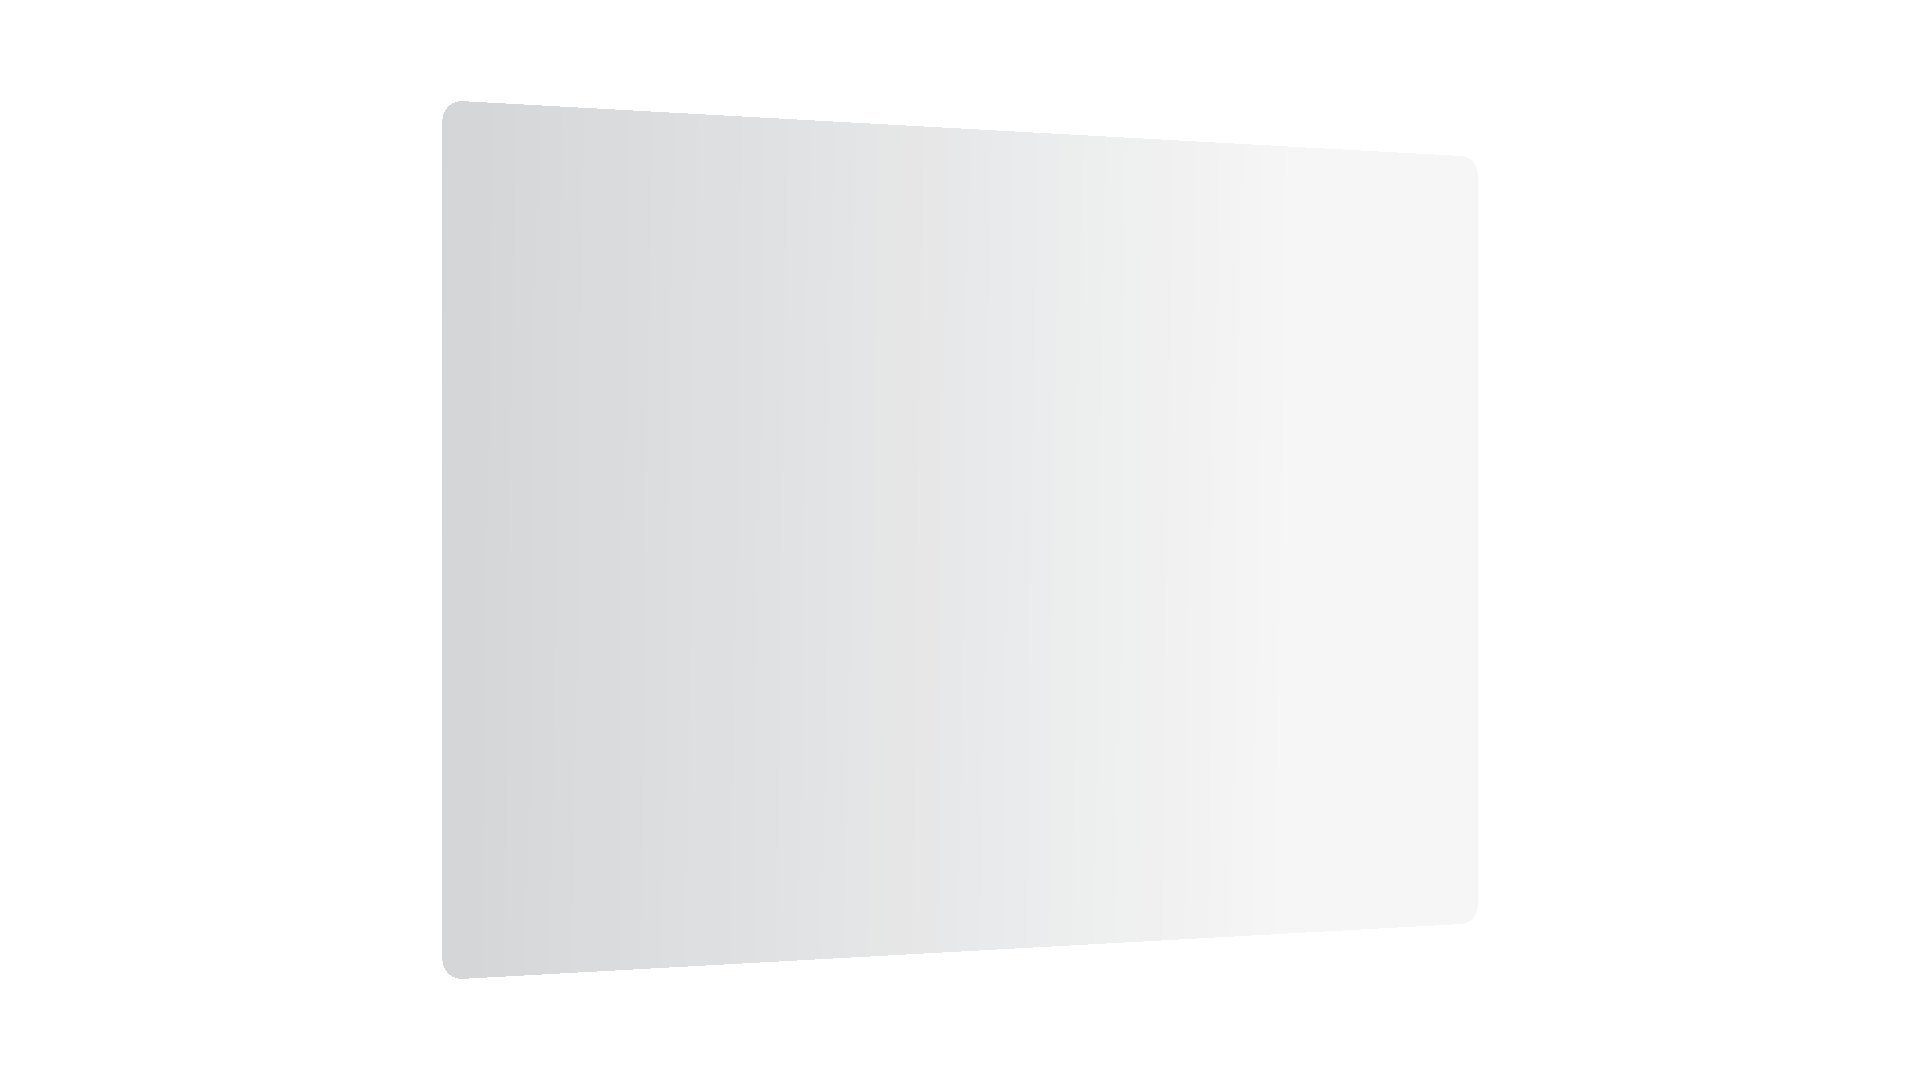 52×60 cm Arbeitsplatte White Schneidebrett Schneidebrett ALLboards Glas Super Herdabdeckplatte